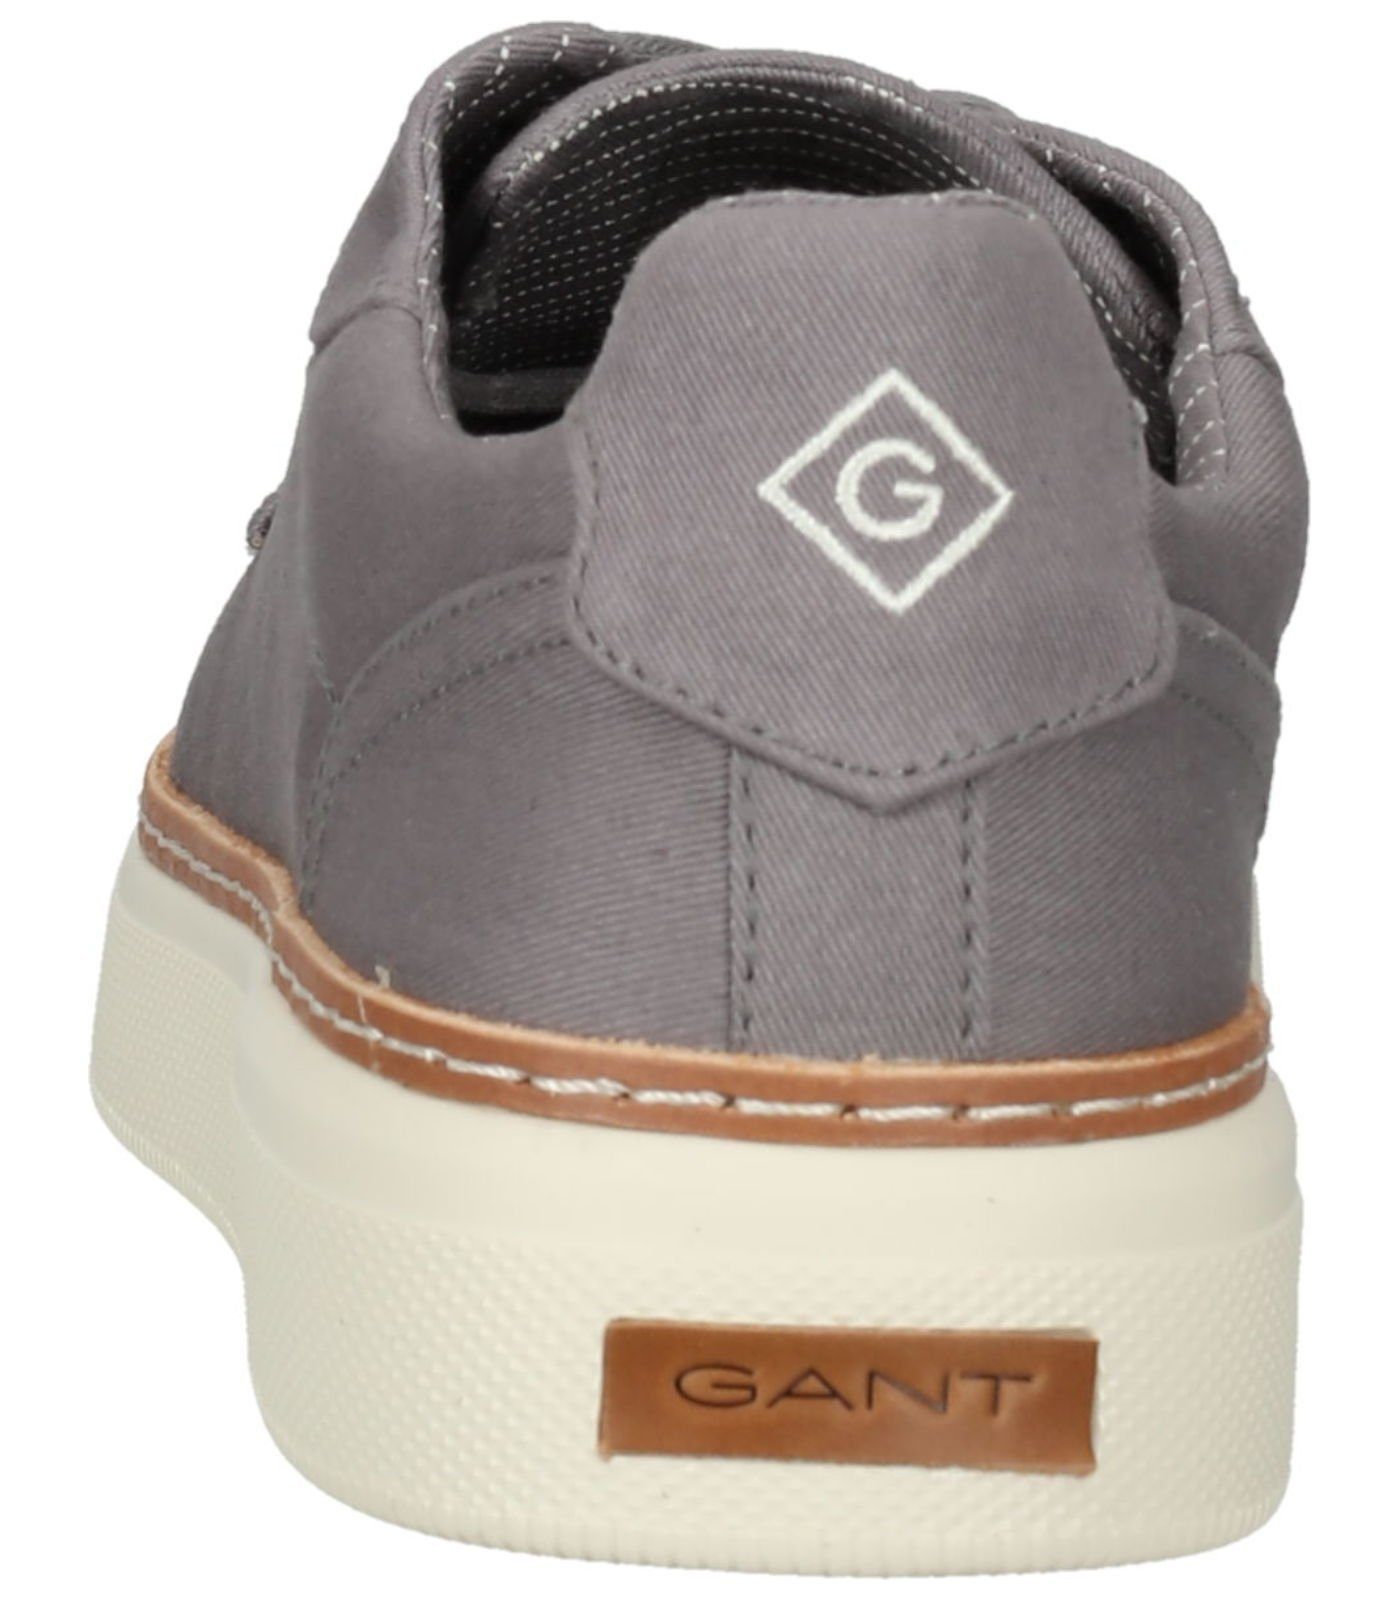 Gant Sneaker Textil Sneaker Grau